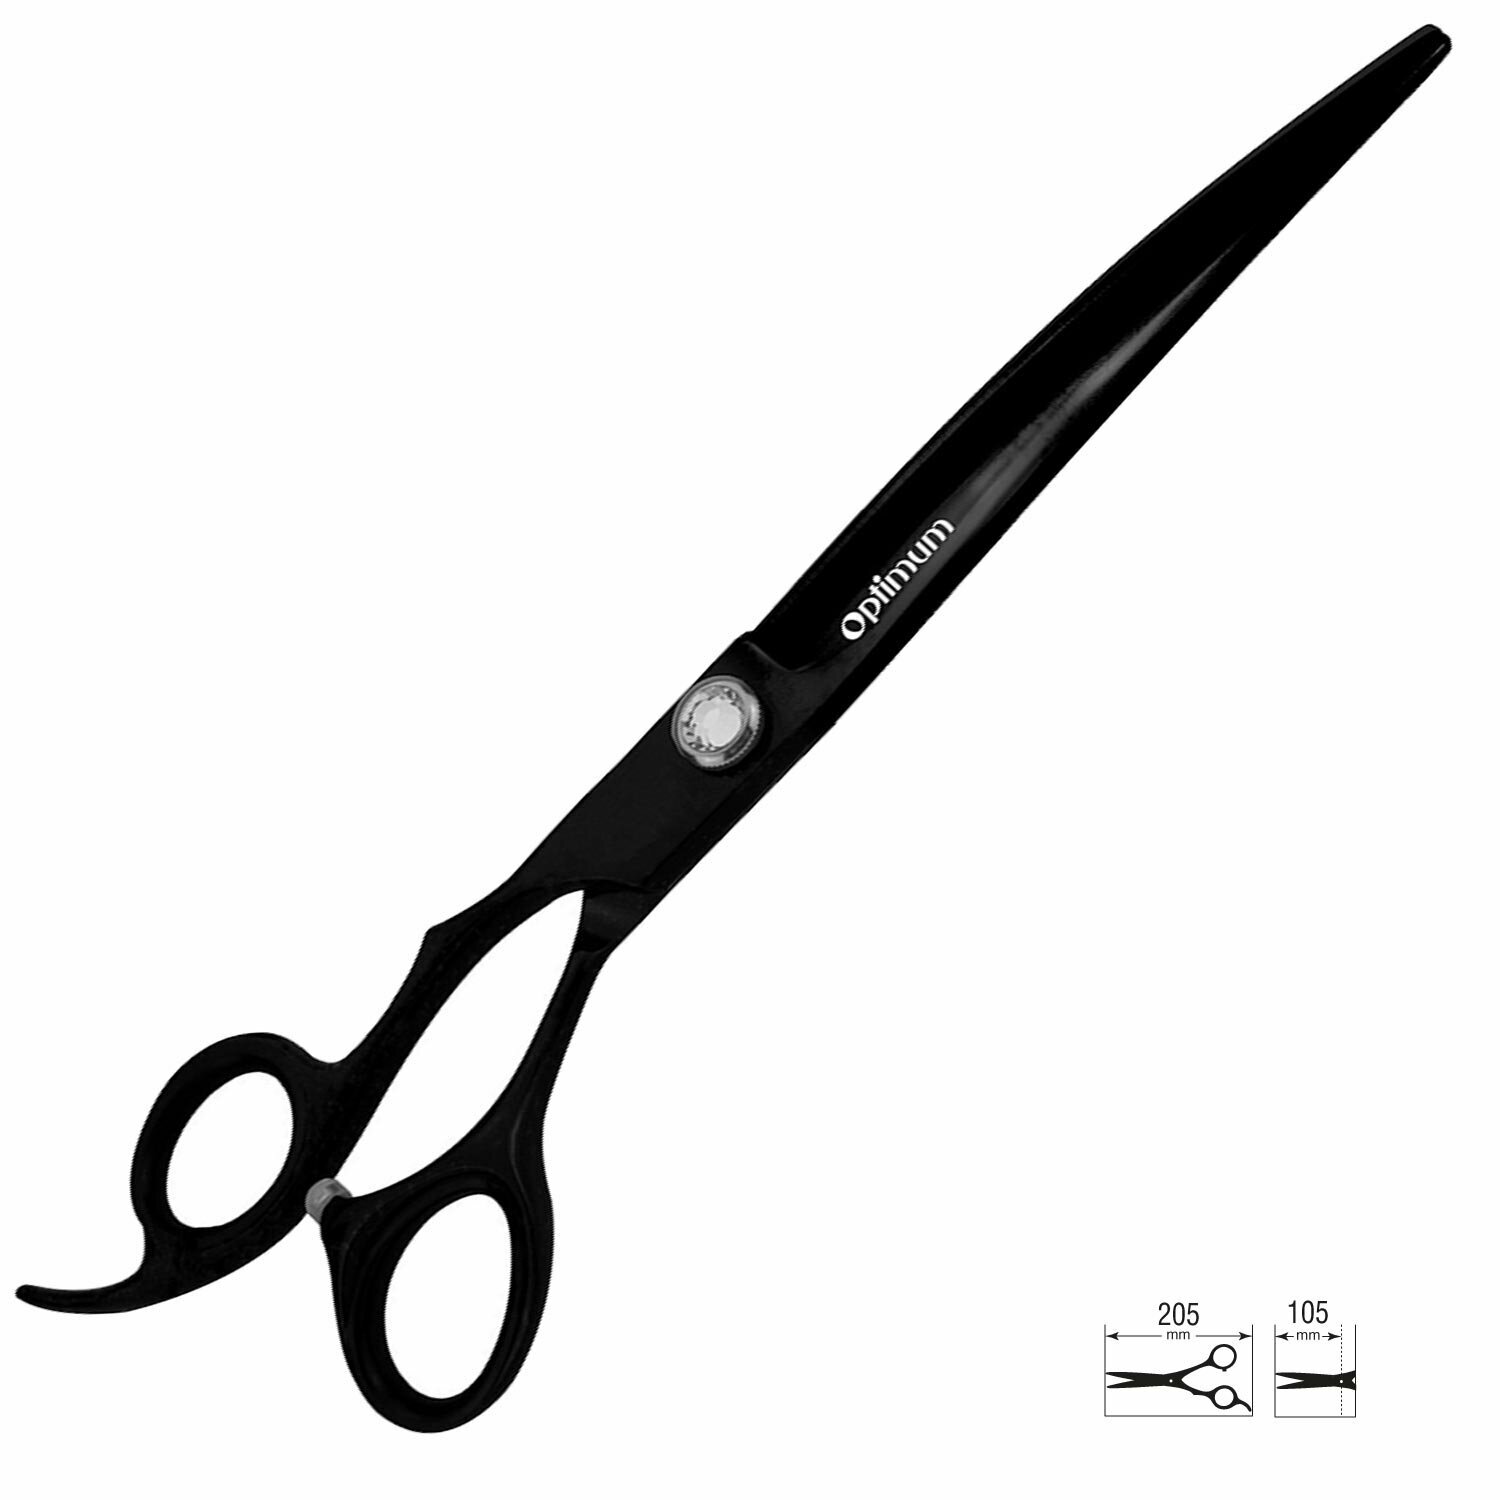 Japanese steel hair scissors for left-handers 21 cm curved